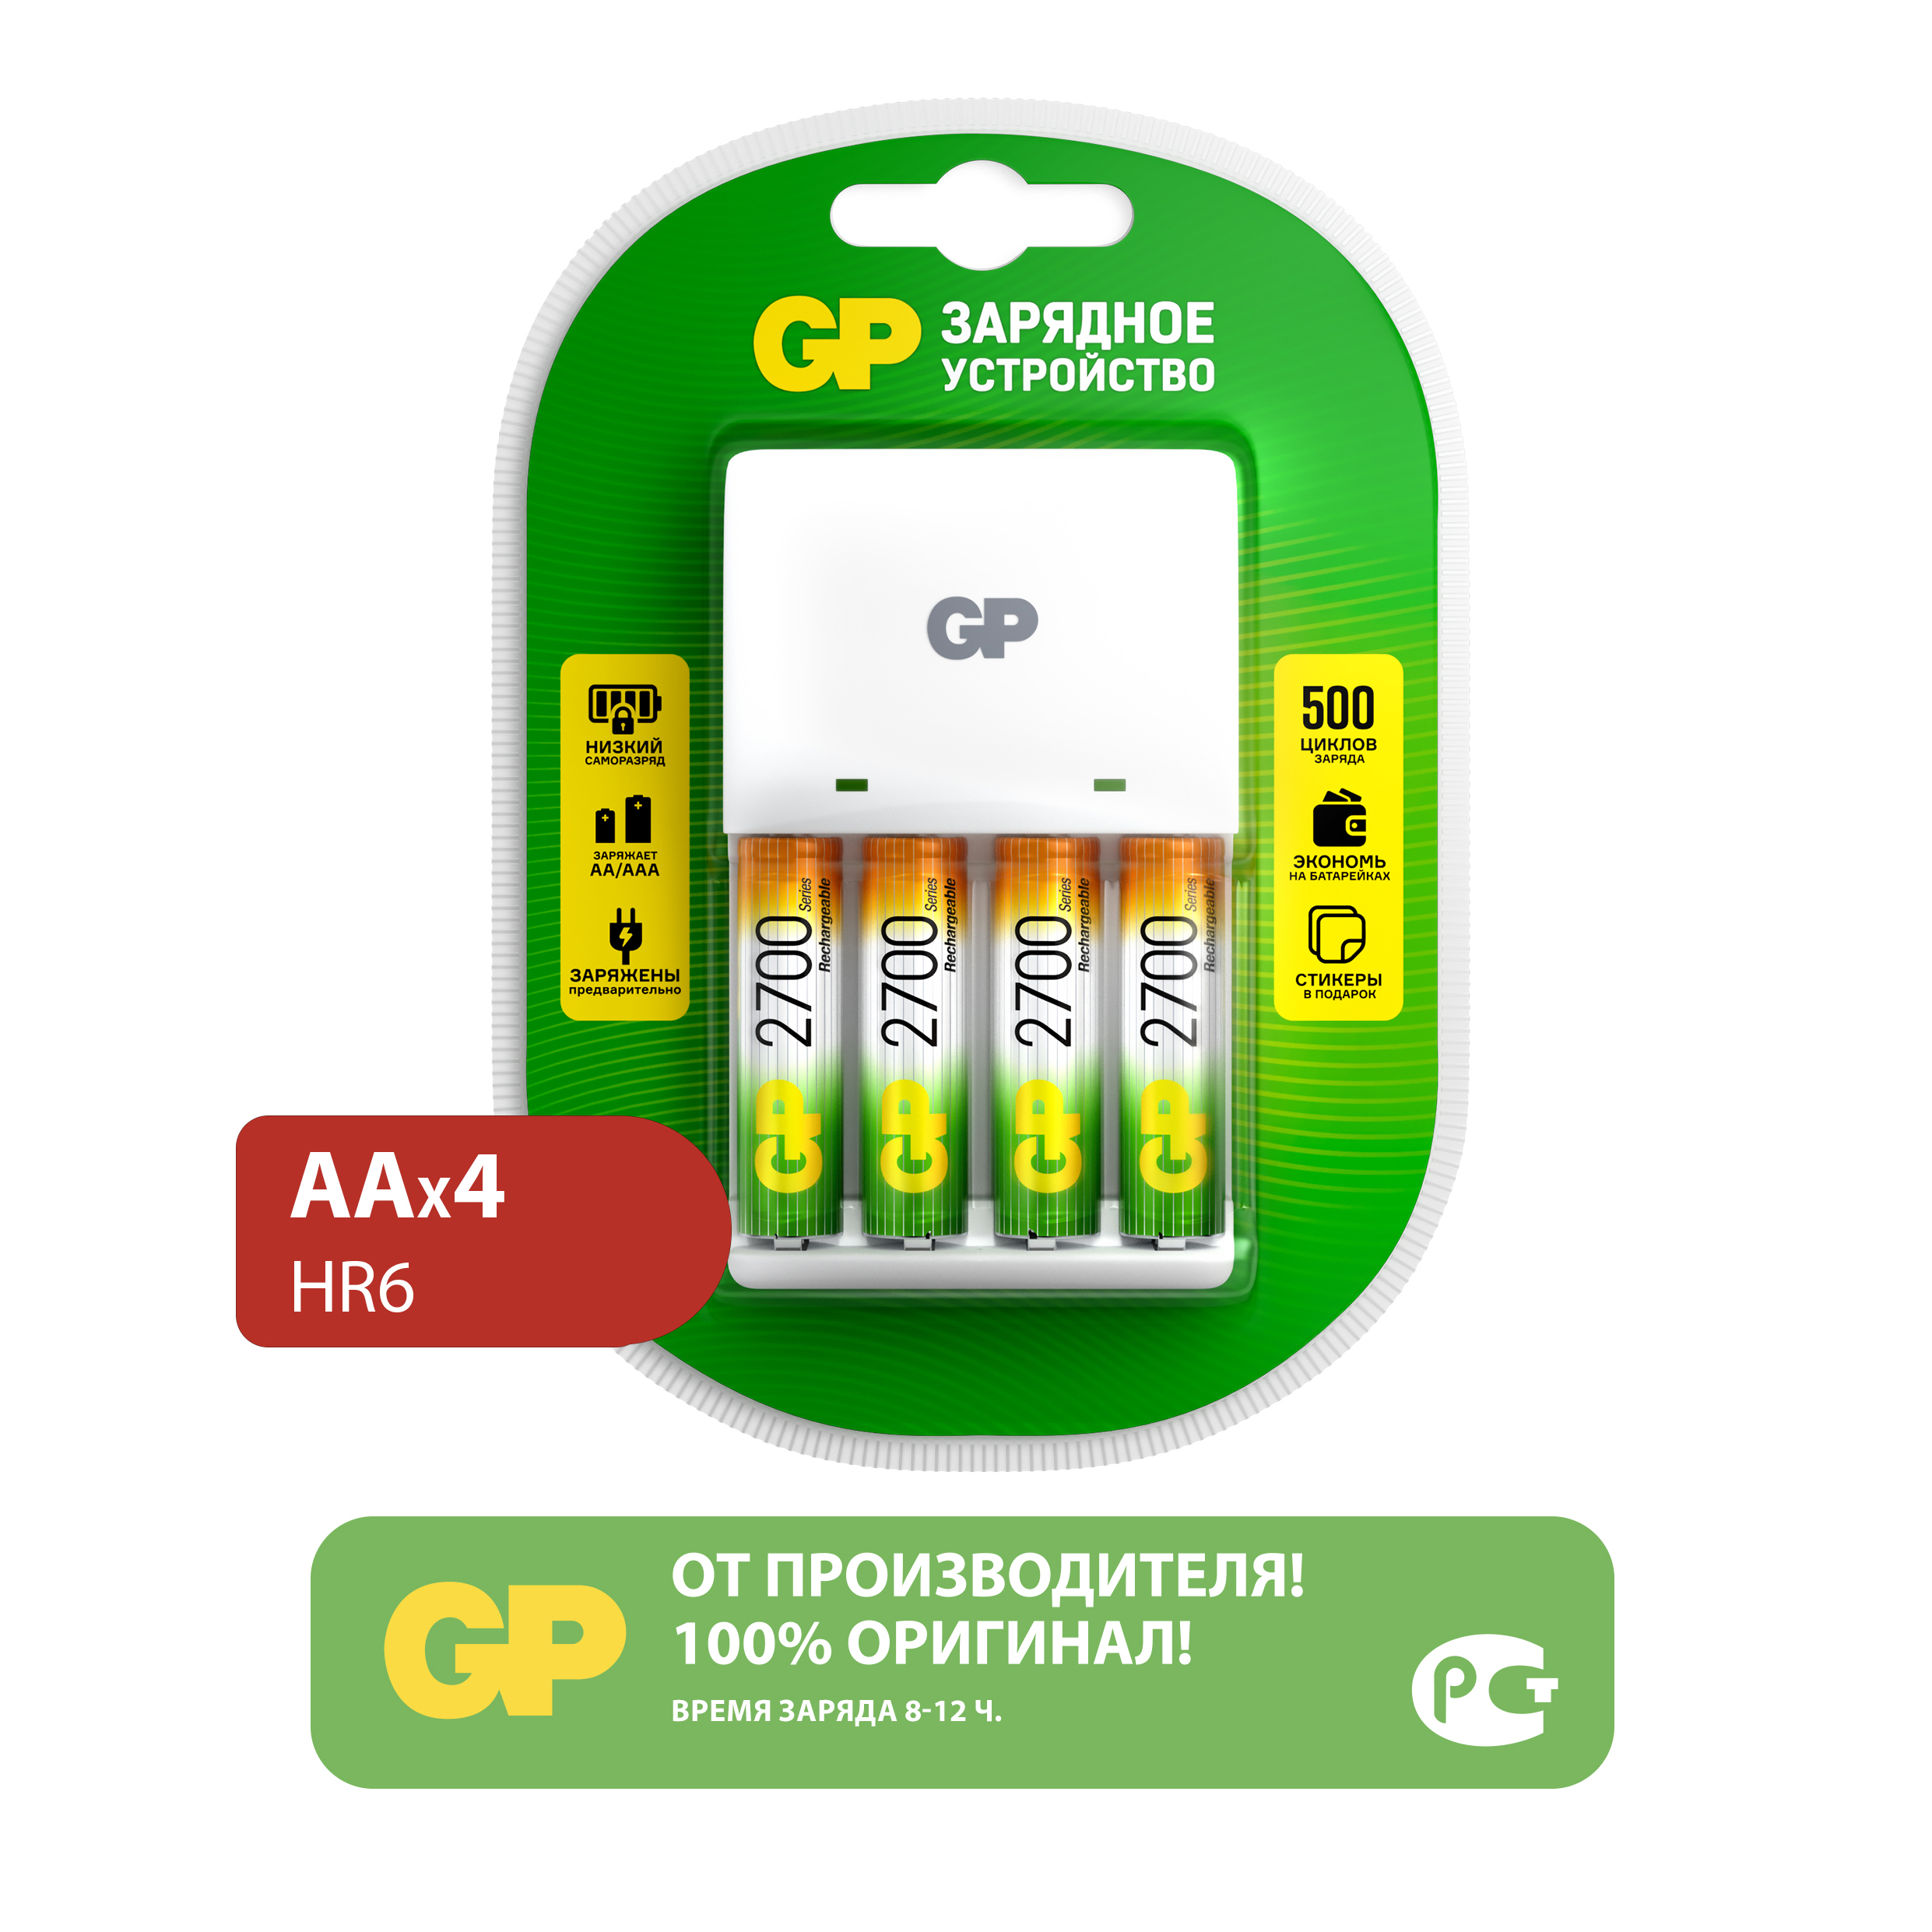 Комплект зарядного устройства GP KB01 и четырех аккумуляторов АА емкостью 2700 мАч - фото 1